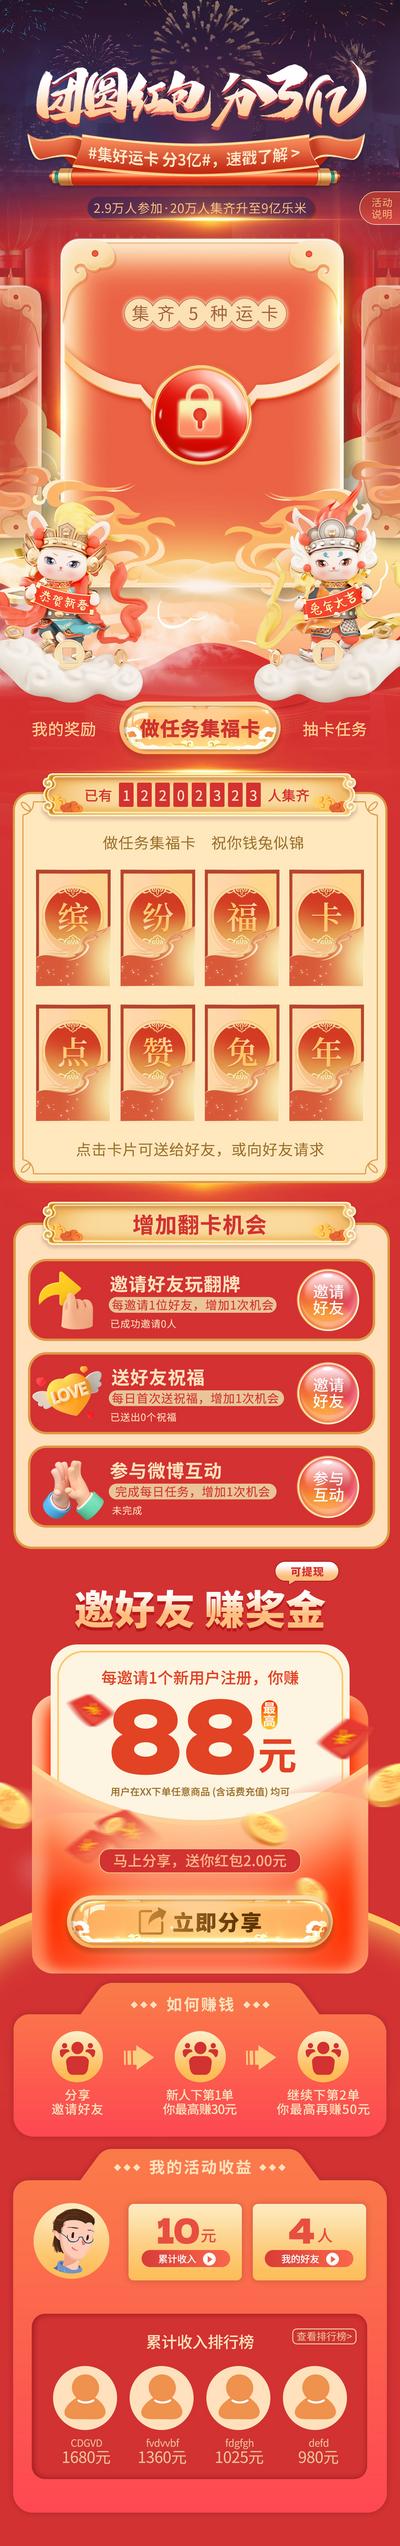 南门网 专题设计 长图 中国传统节日 新年 兔年 春节 翻牌 抽奖 国潮风